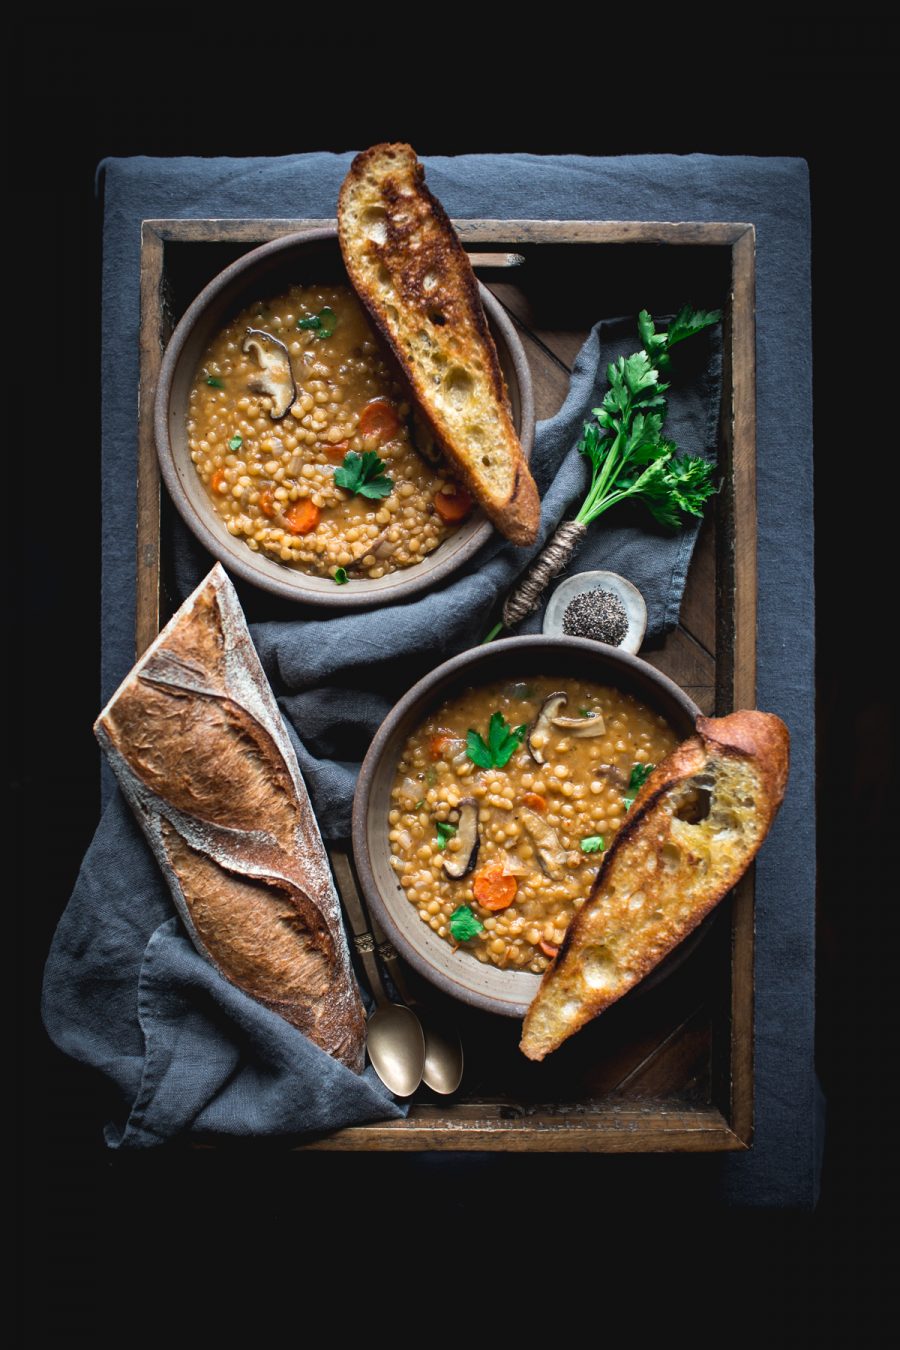 Lentil Soup Recipe by Eva Kosmas Flores